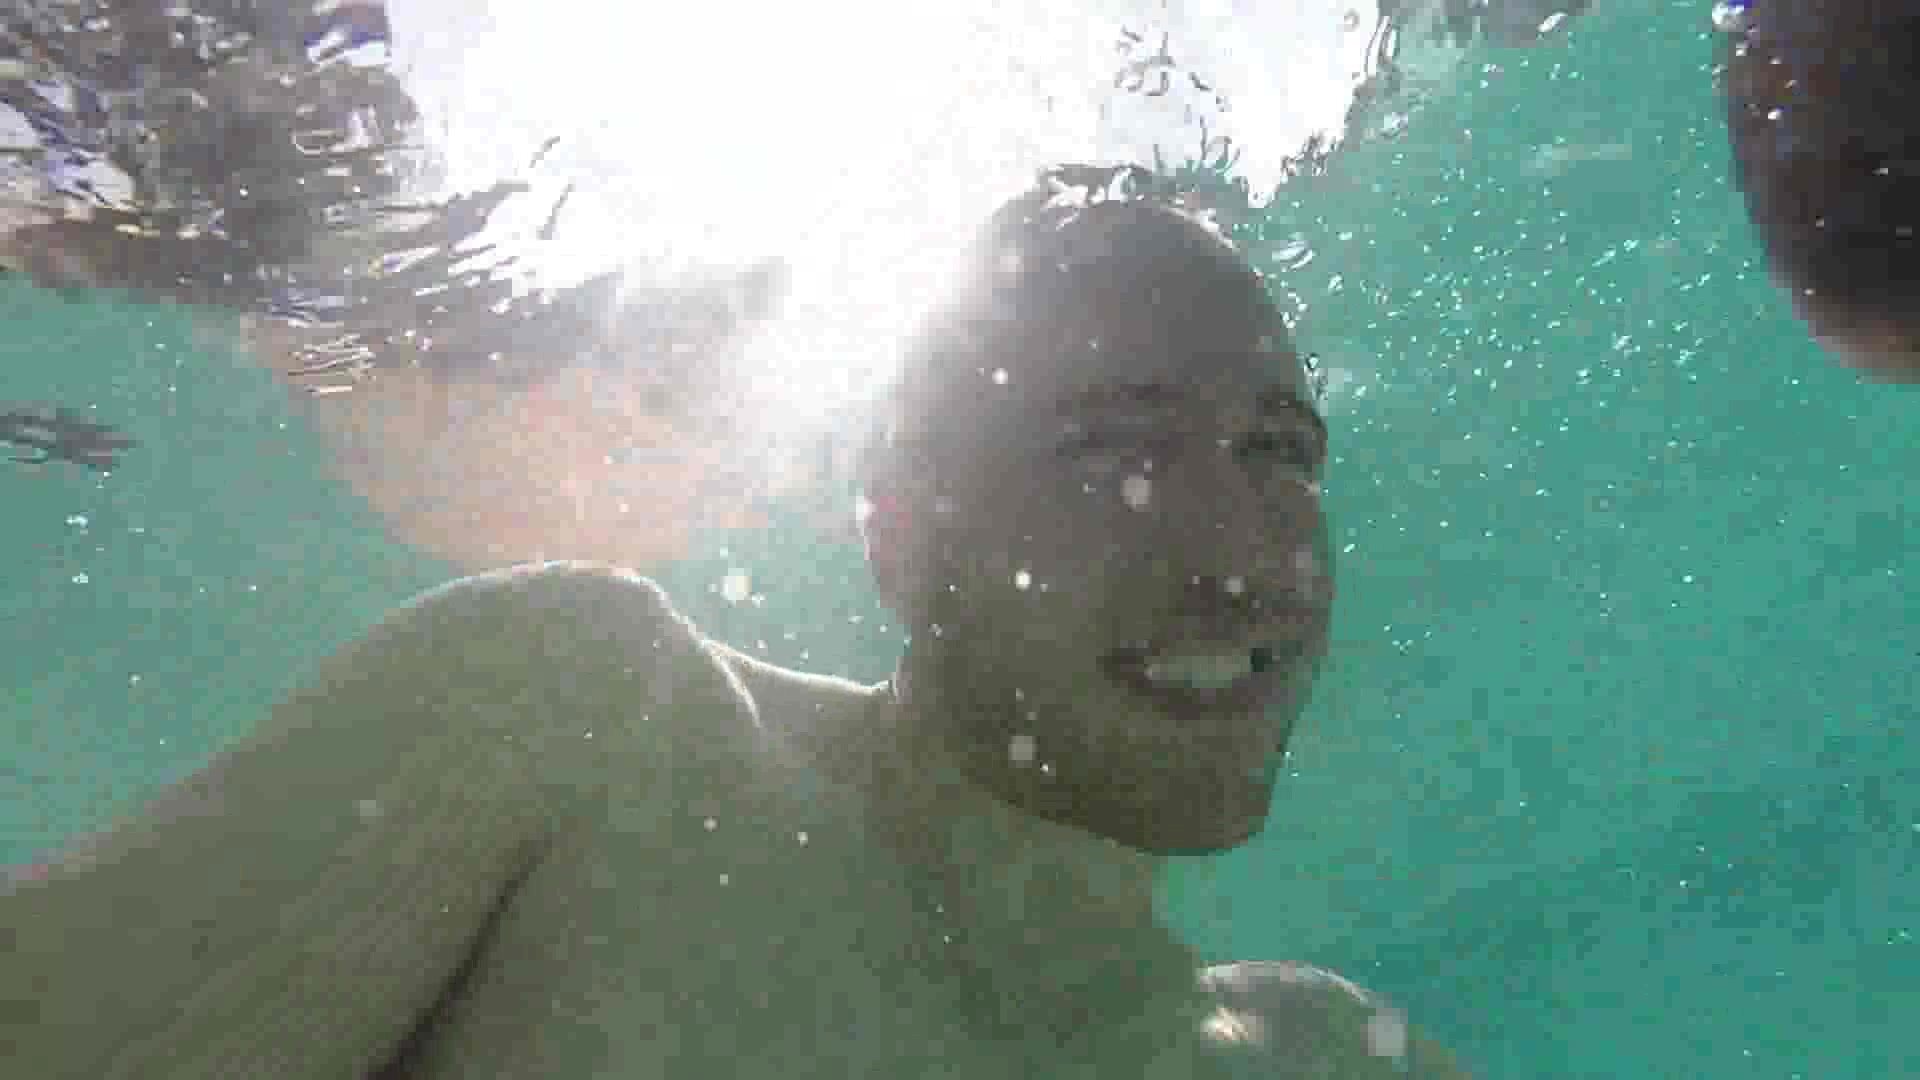 Barefaced cutie underwater in pool - video 2